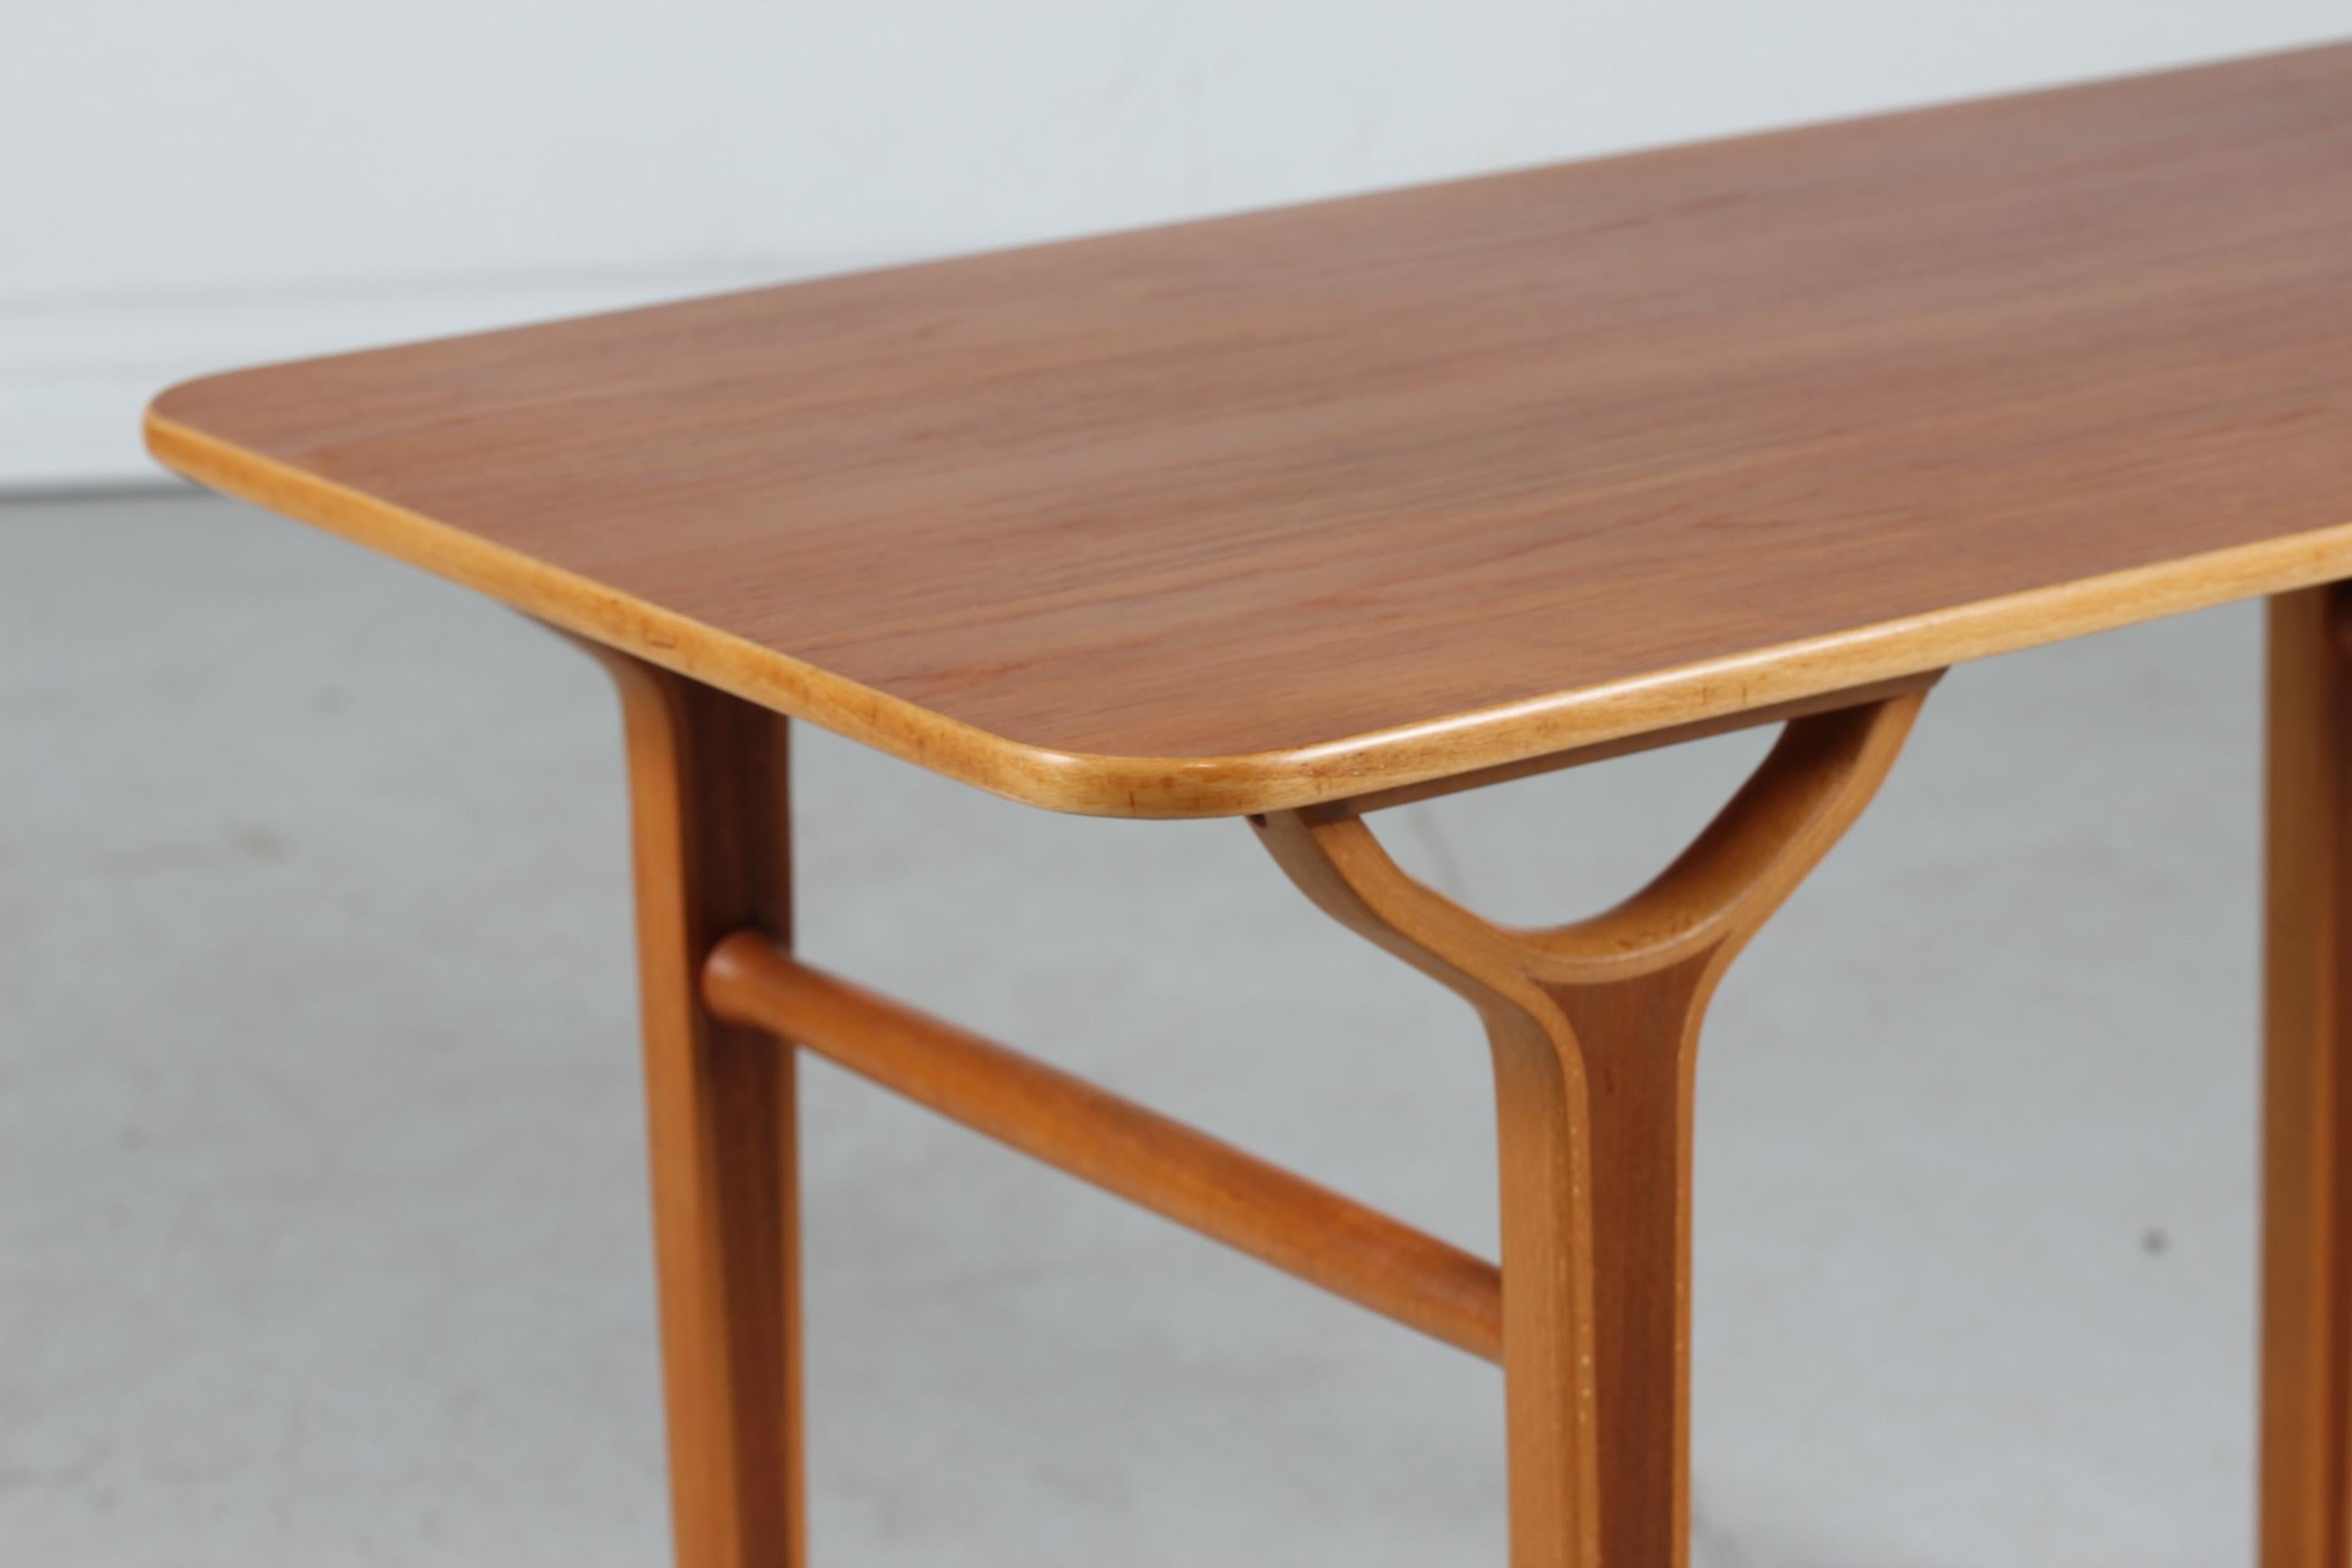 Vintage-Couchtisch AX im Vintage-Stil der dänischen Architekten Peter Hvidt & Orla Mlgaard.

Der Tisch wurde in den 1950er Jahren aus Teakholz mit eingelegtem Buchenholz gefertigt und befindet sich in einem sehr schönen Vintage-Zustand ohne